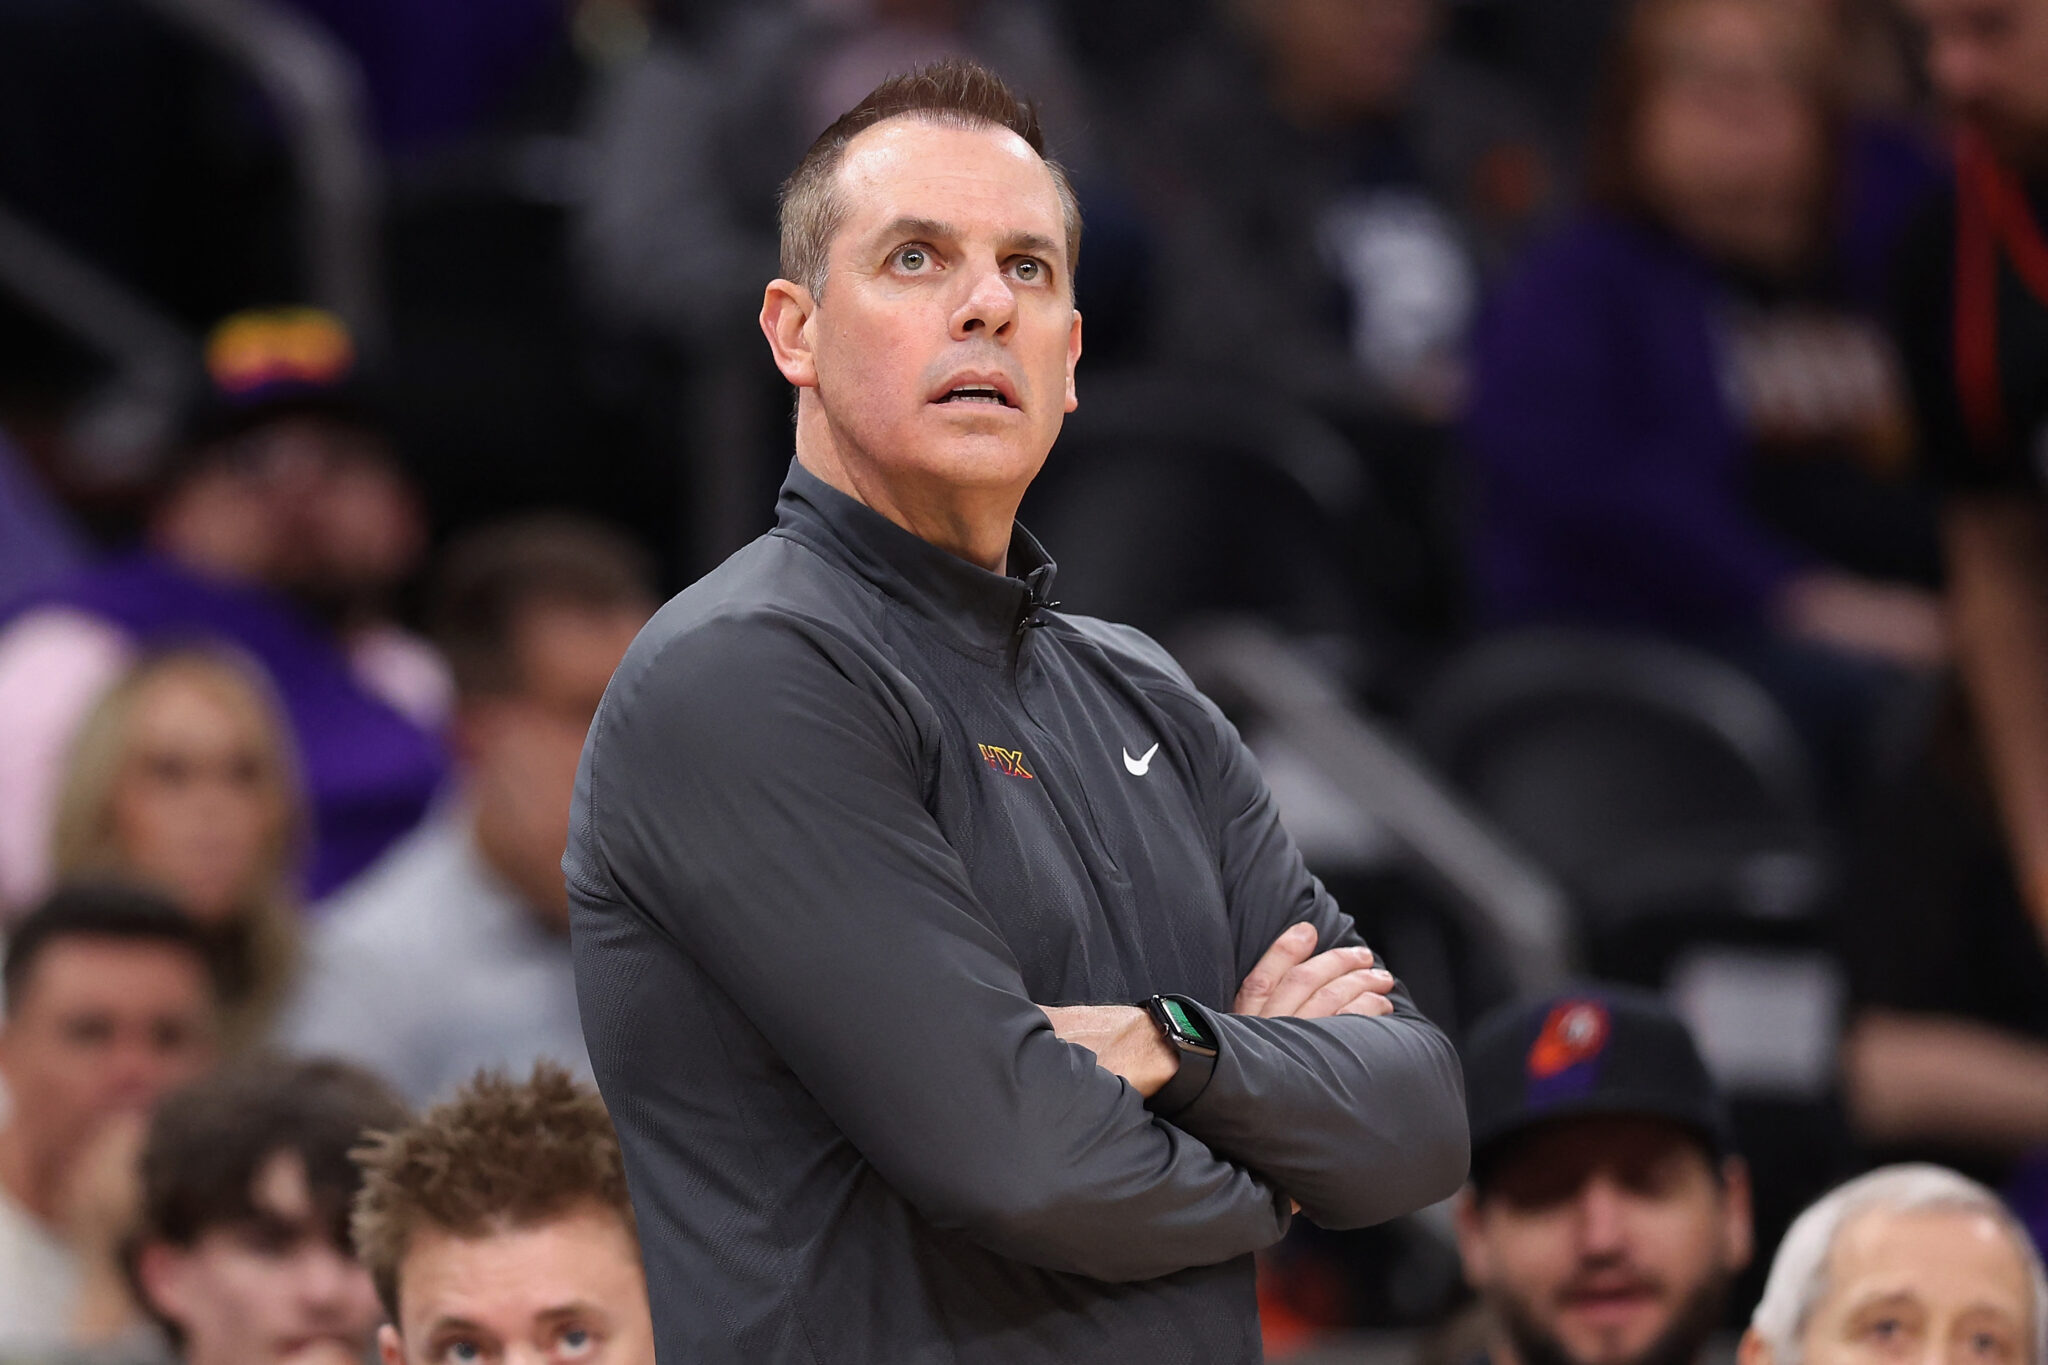 NBA: Suns fire coach Frank Vogel after playoffs first round exit